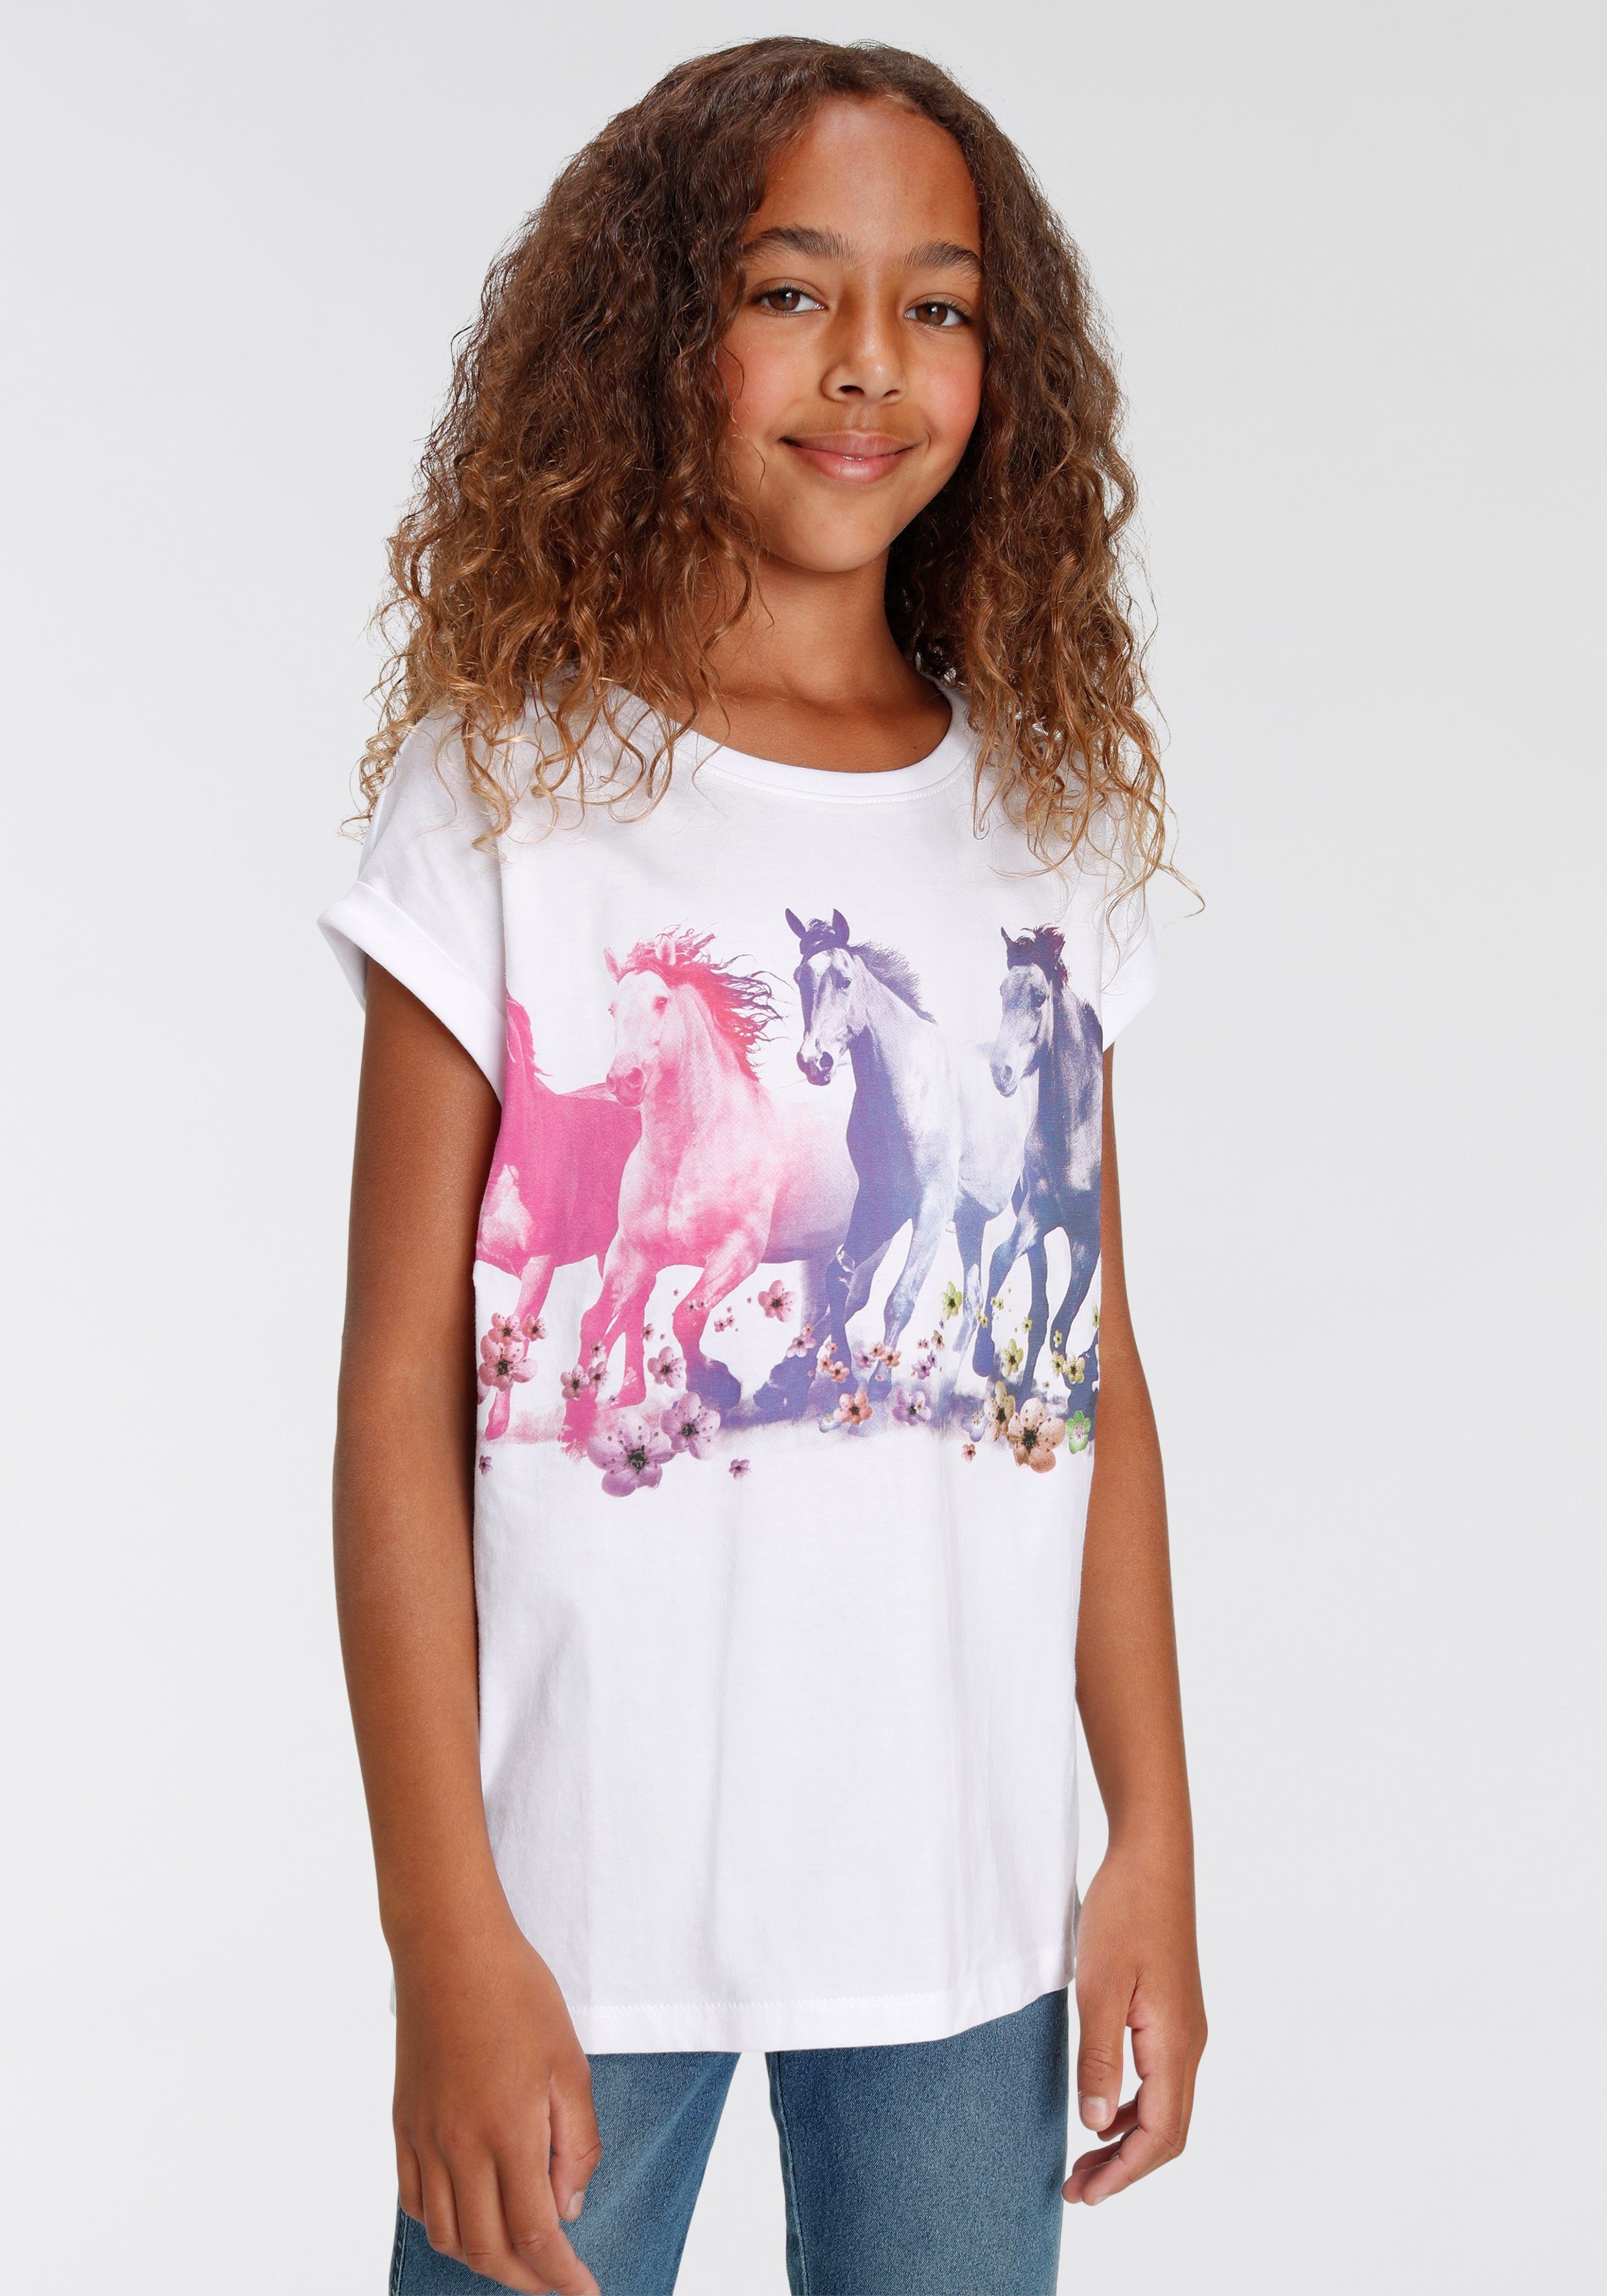 KIDSWORLD T-shirt Paarden wijd, casual model